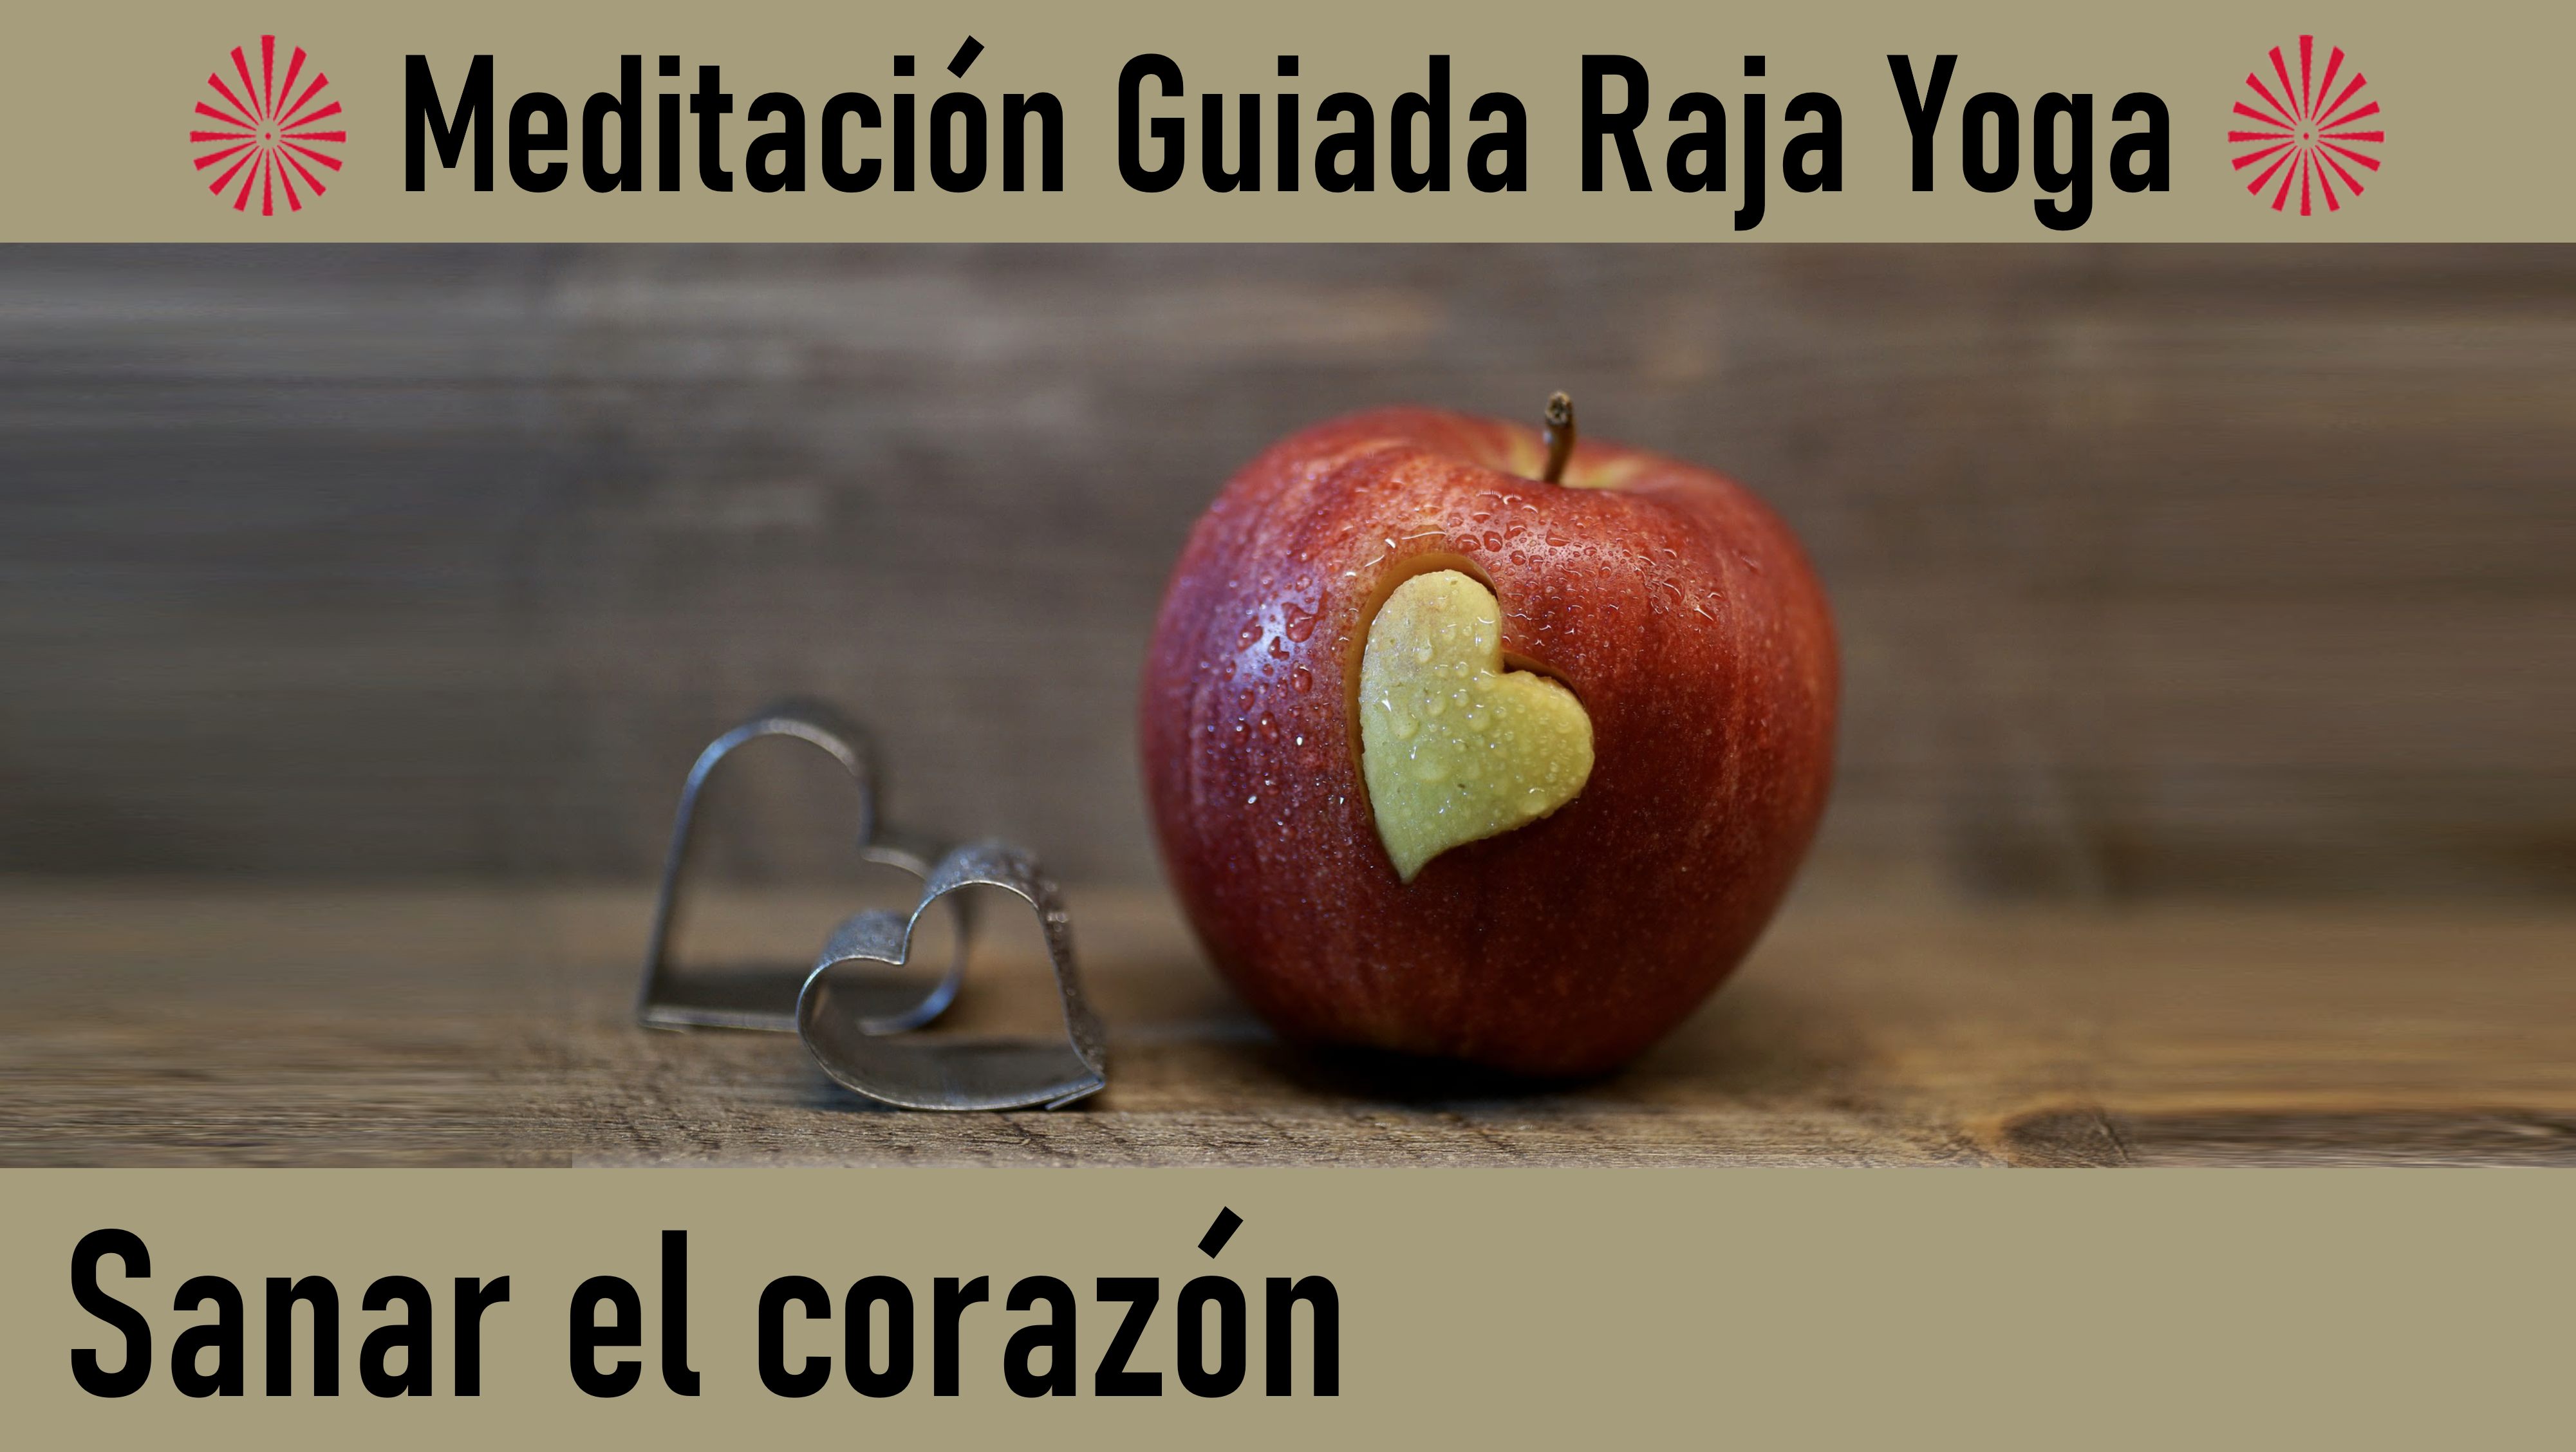 Meditación Raja Yoga  “Sanar el corazón“ (18 Mayo 2020) On-line desde Barcelona